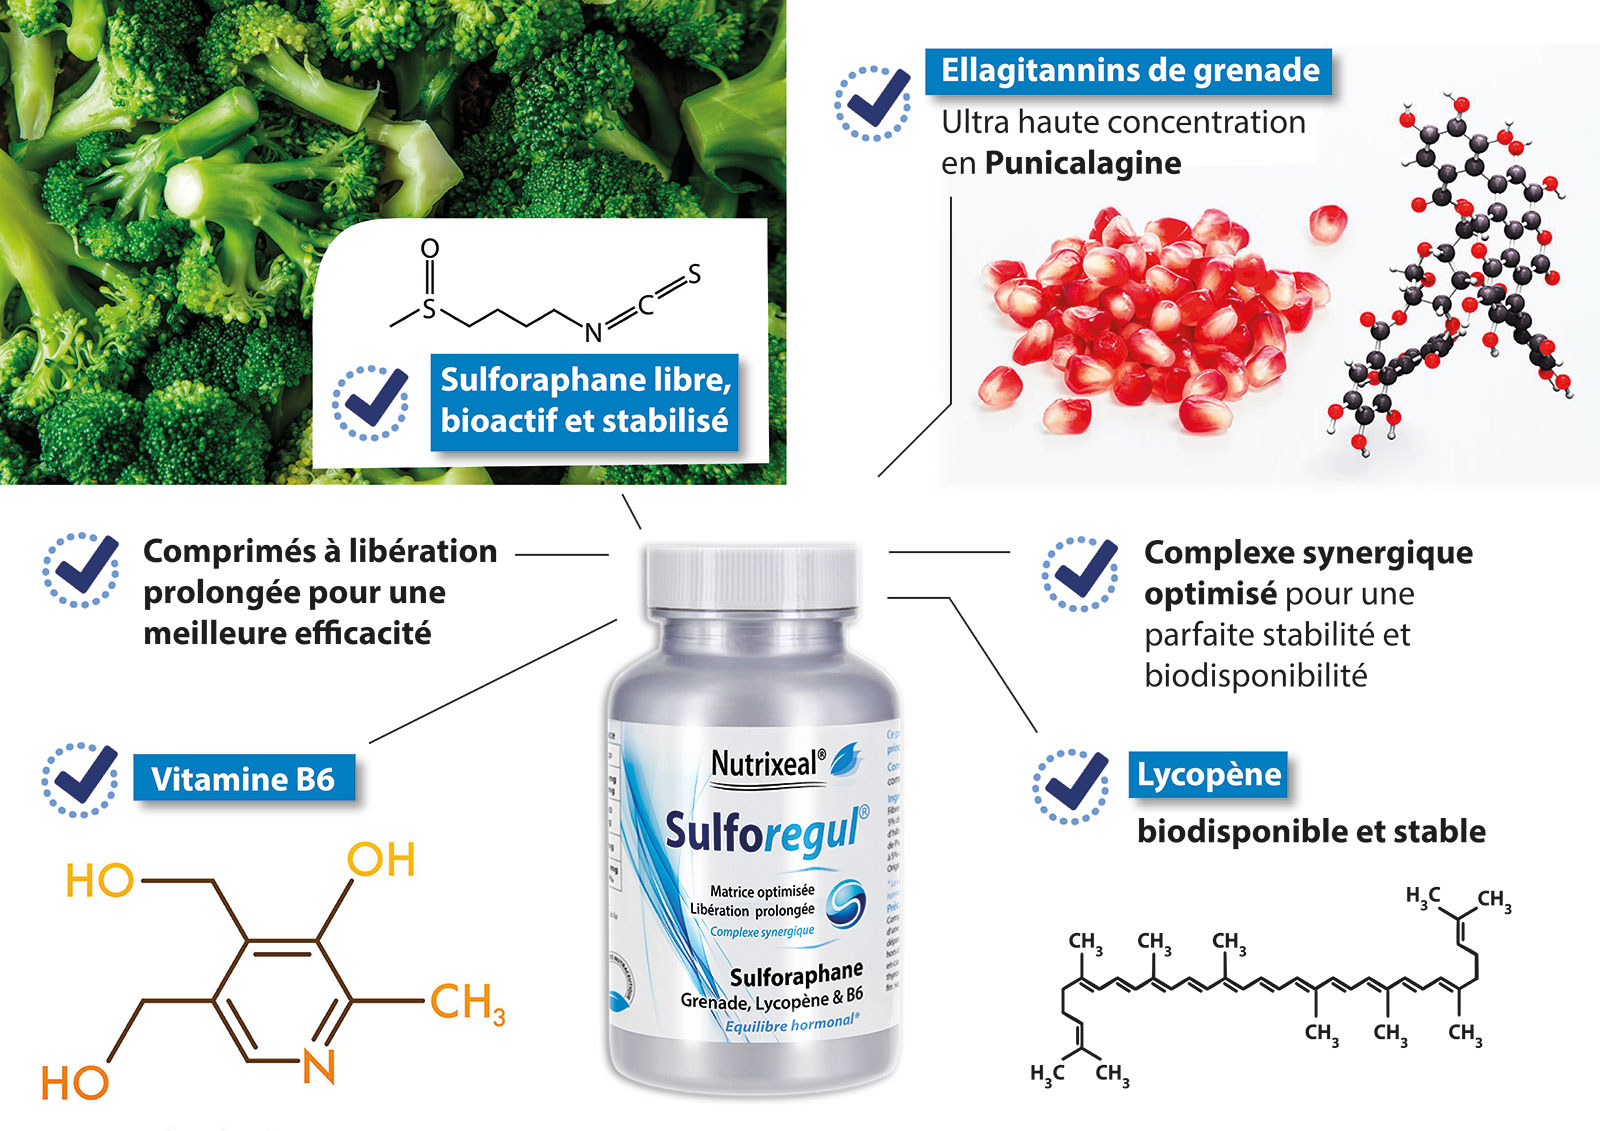 Les points forts du complément alimentaire Suforégul à base sulforaphane stabilisé, Ellagitannins de grenade concentrés en punicalagine, Lycopène stable et de la vitamine b6